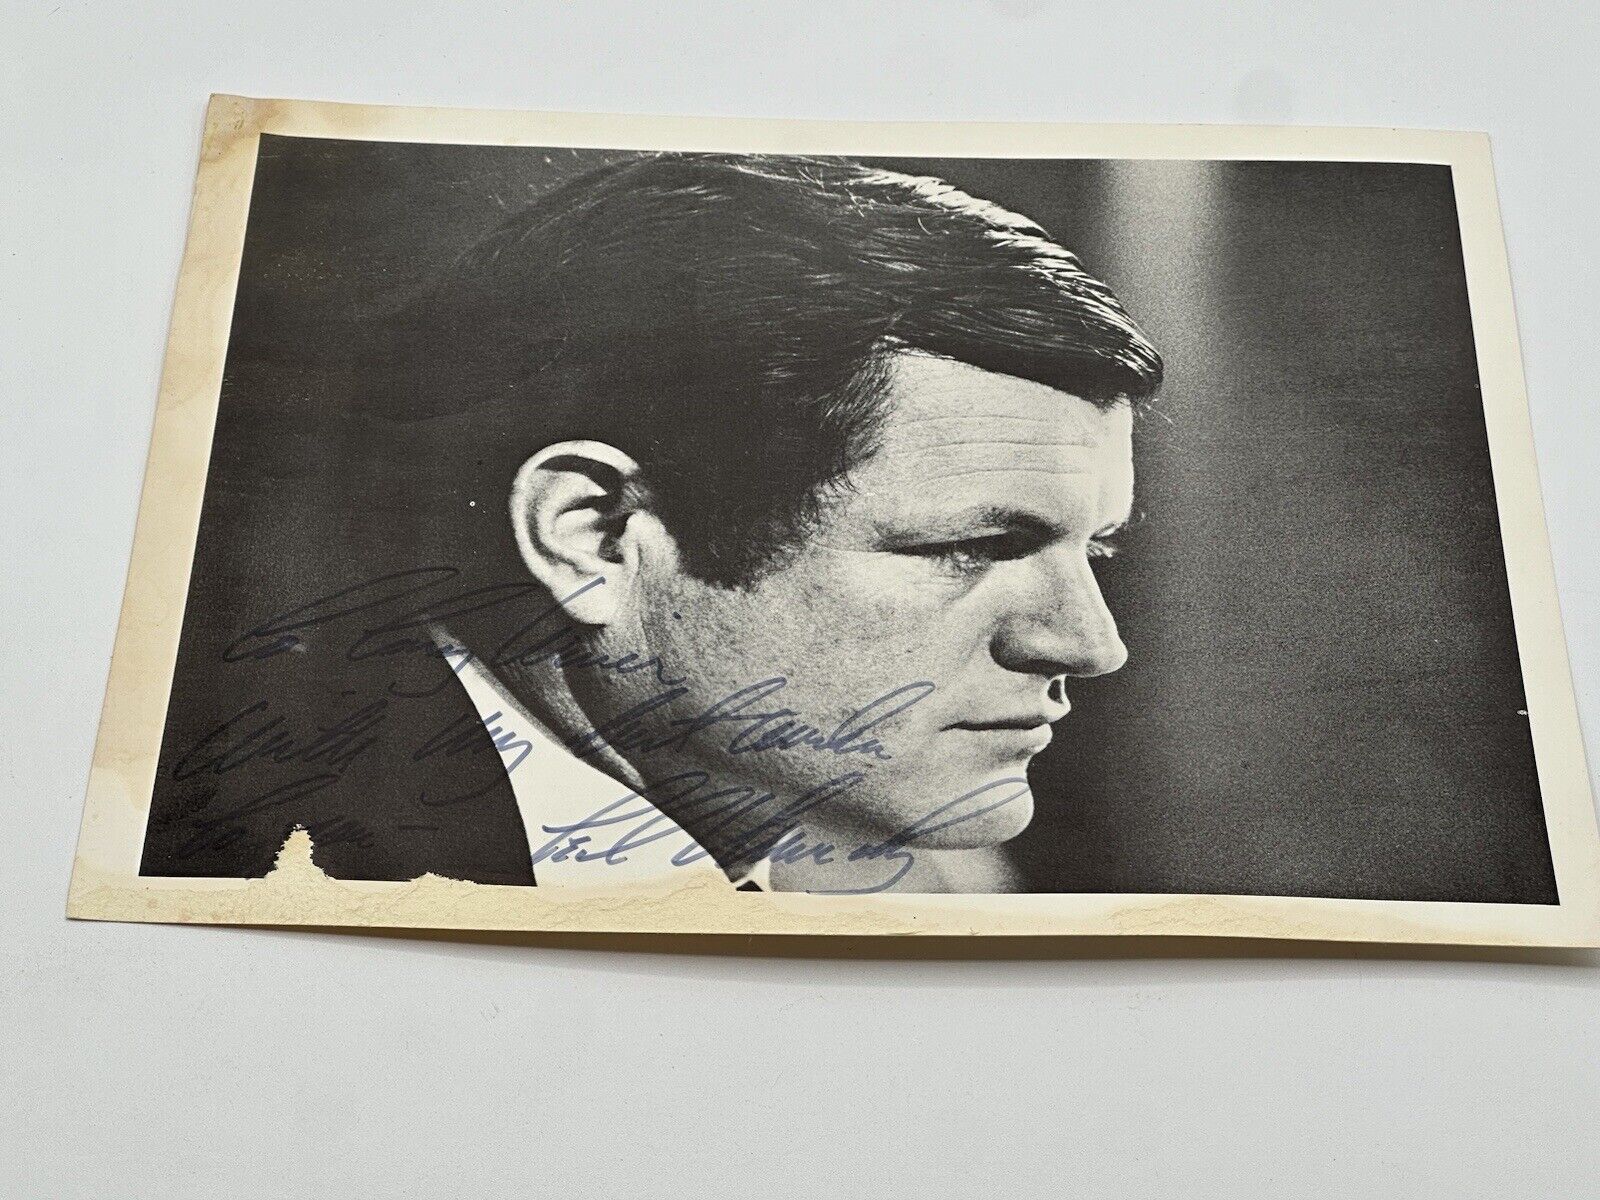 Senator Edward Ted Kennedy Signed Photograph